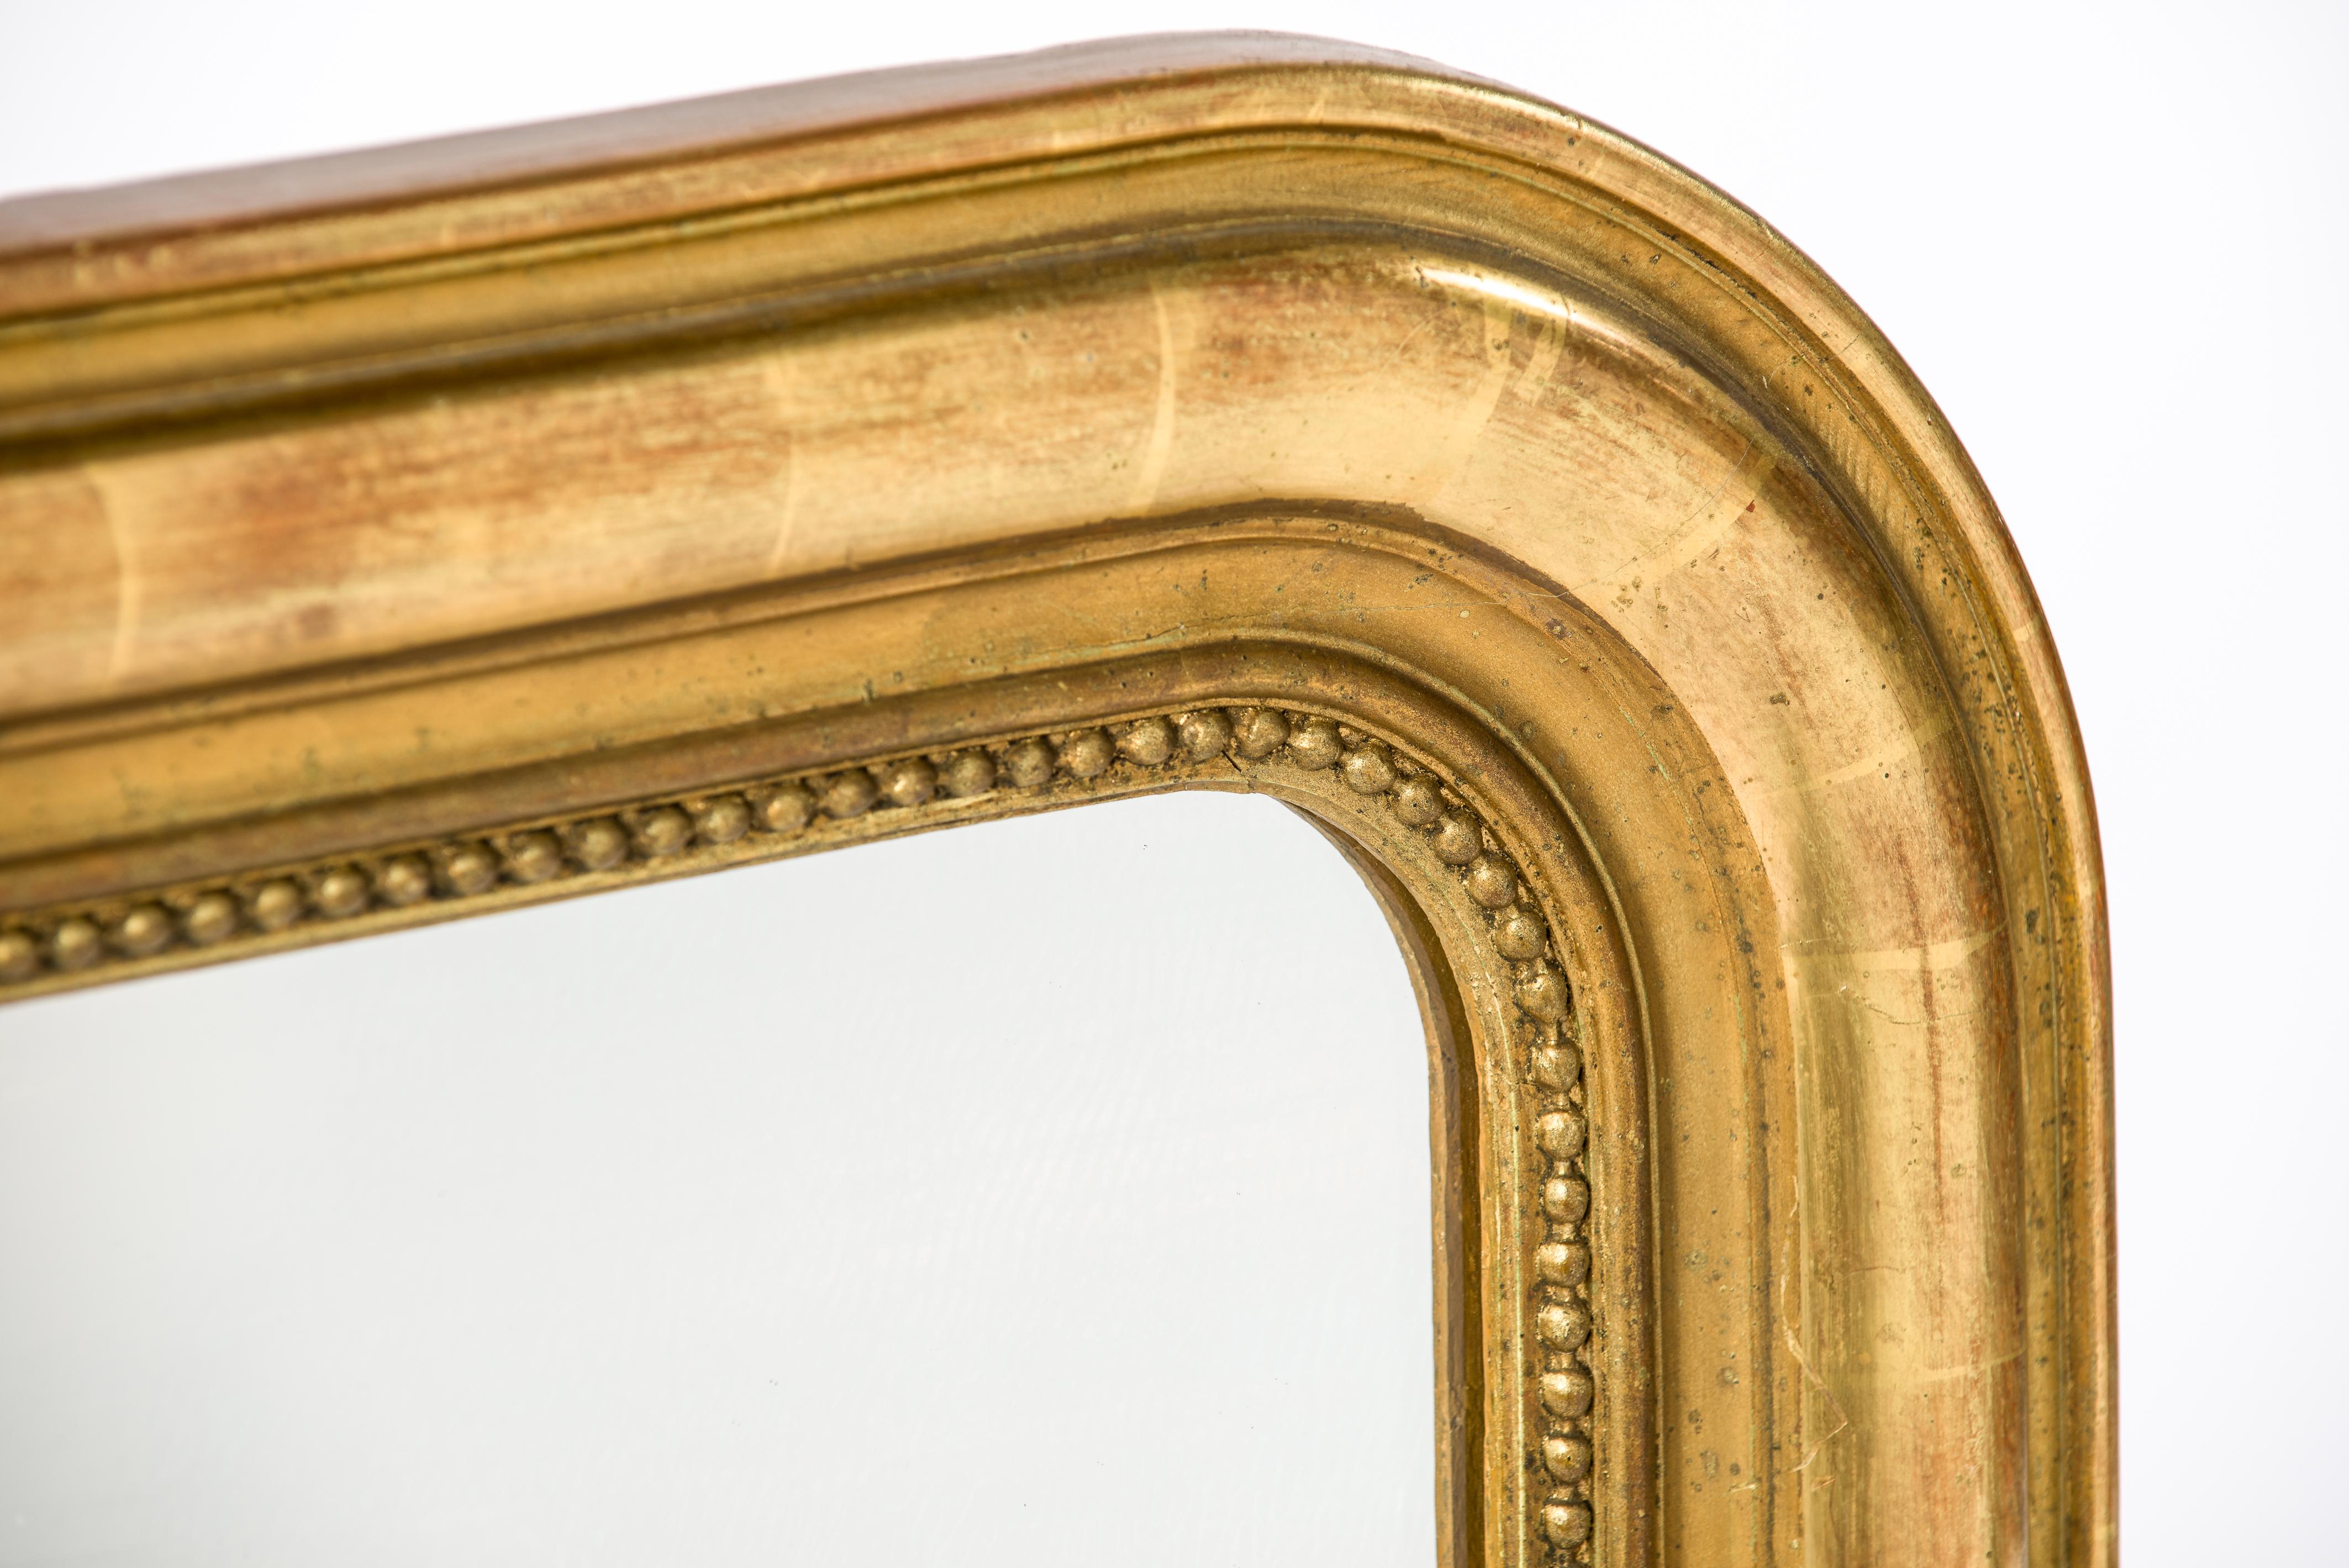 Dieser schöne antike Spiegel wurde im späten 19. Jahrhundert, etwa 1890, in Frankreich hergestellt. Sie weist die für den Louis-Philippe-Stil typischen oberen abgerundeten Ecken auf. Der Spiegel hat einen Rahmen aus massivem Kiefernholz, der mit